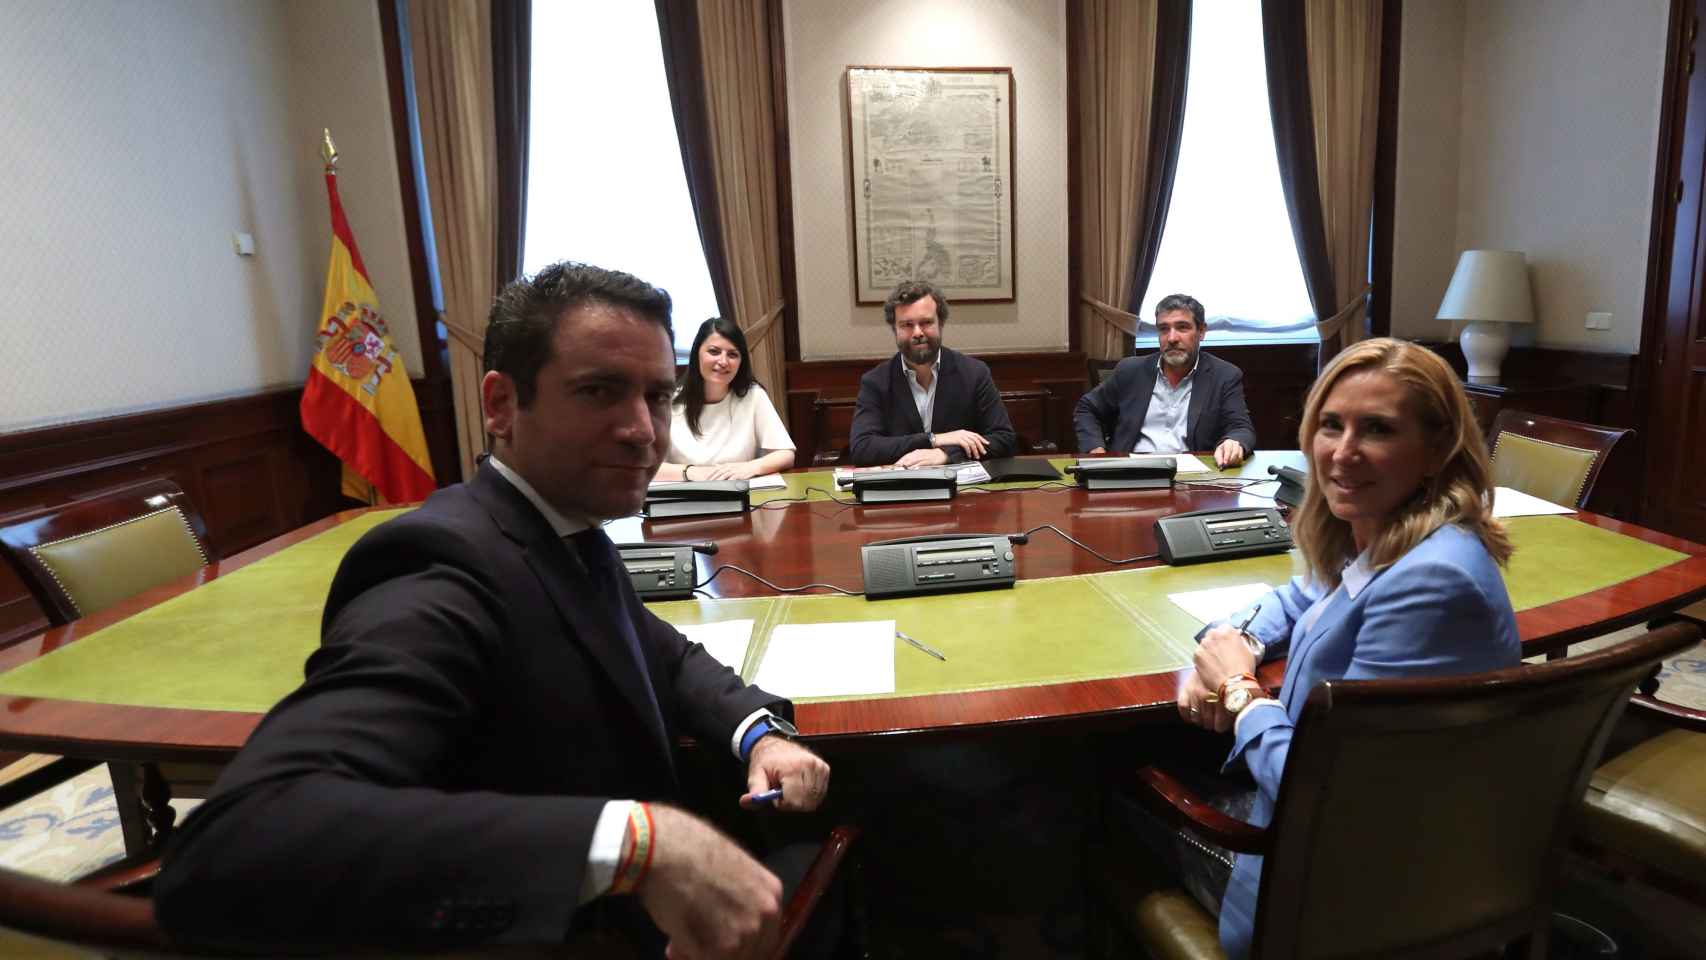 El secretario general del PP, Teodoro García Egea, y la presidenta del PP de la Comunidad de Navarra, Ana Beltrán, reunidos con miembros de la dirección de Vox, el martes en el Congreso.